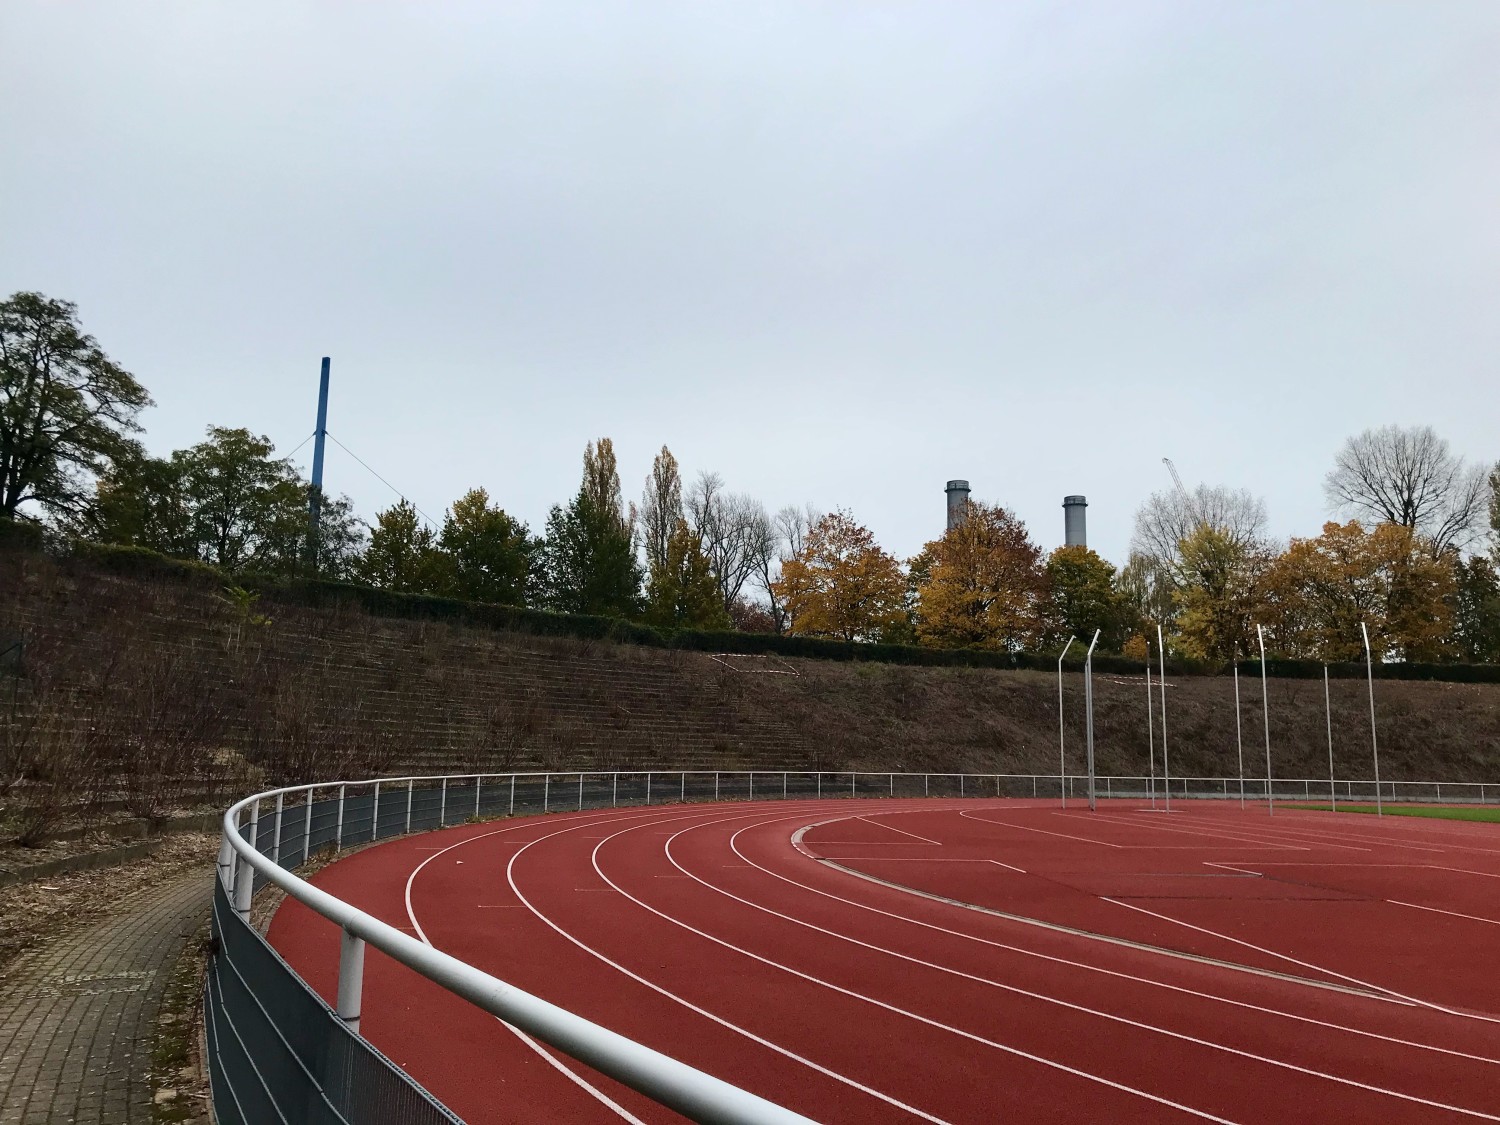 Tartanbahn der Ostkurve im Stadion Wilmersdorf mit markierten Aussaatflächen auf der Böschung im Hintergrund.